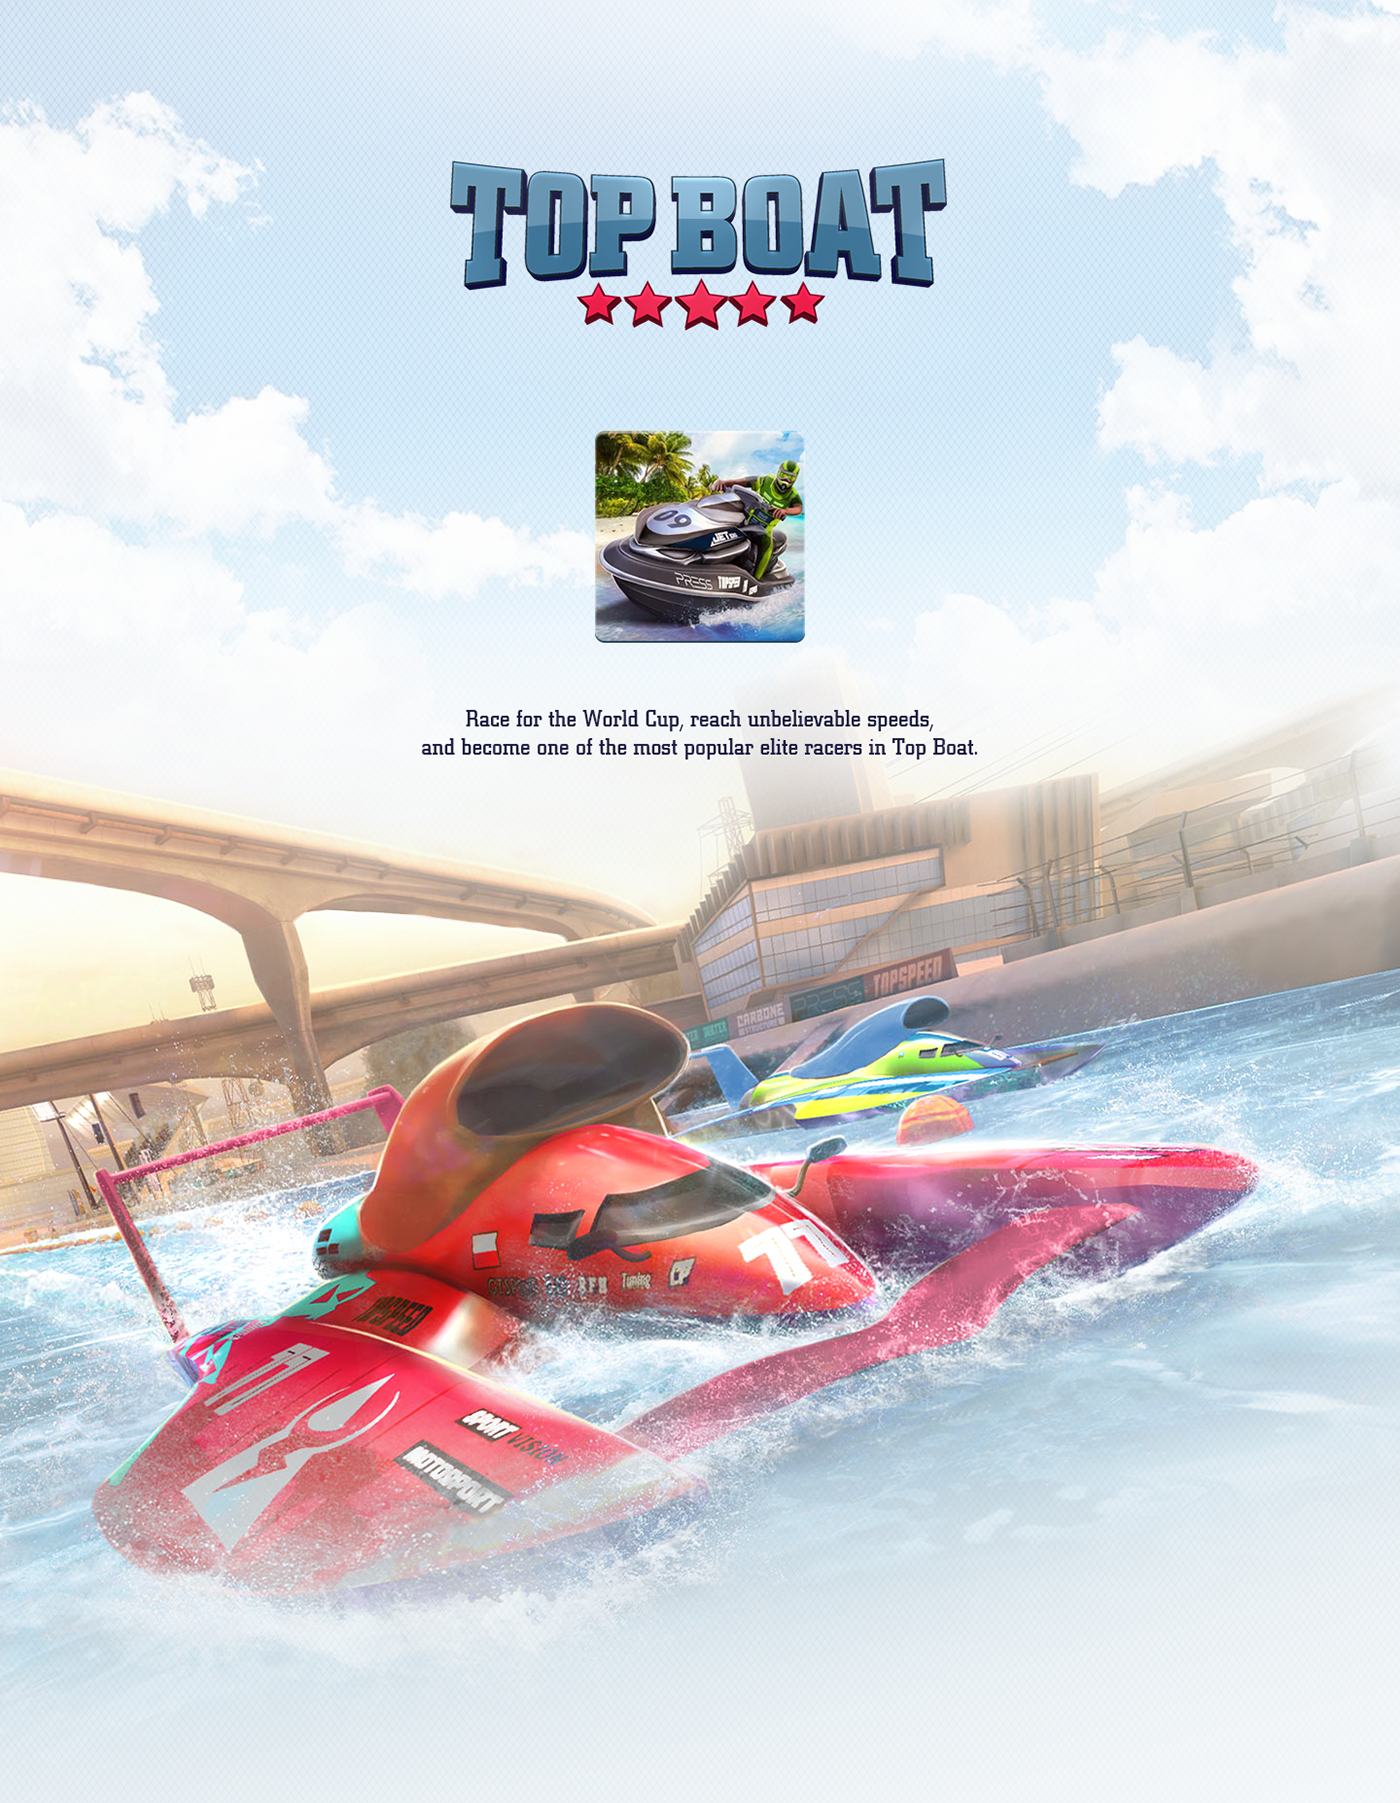 boat mobilegame sport superboat Racing game mobile emblem motion add